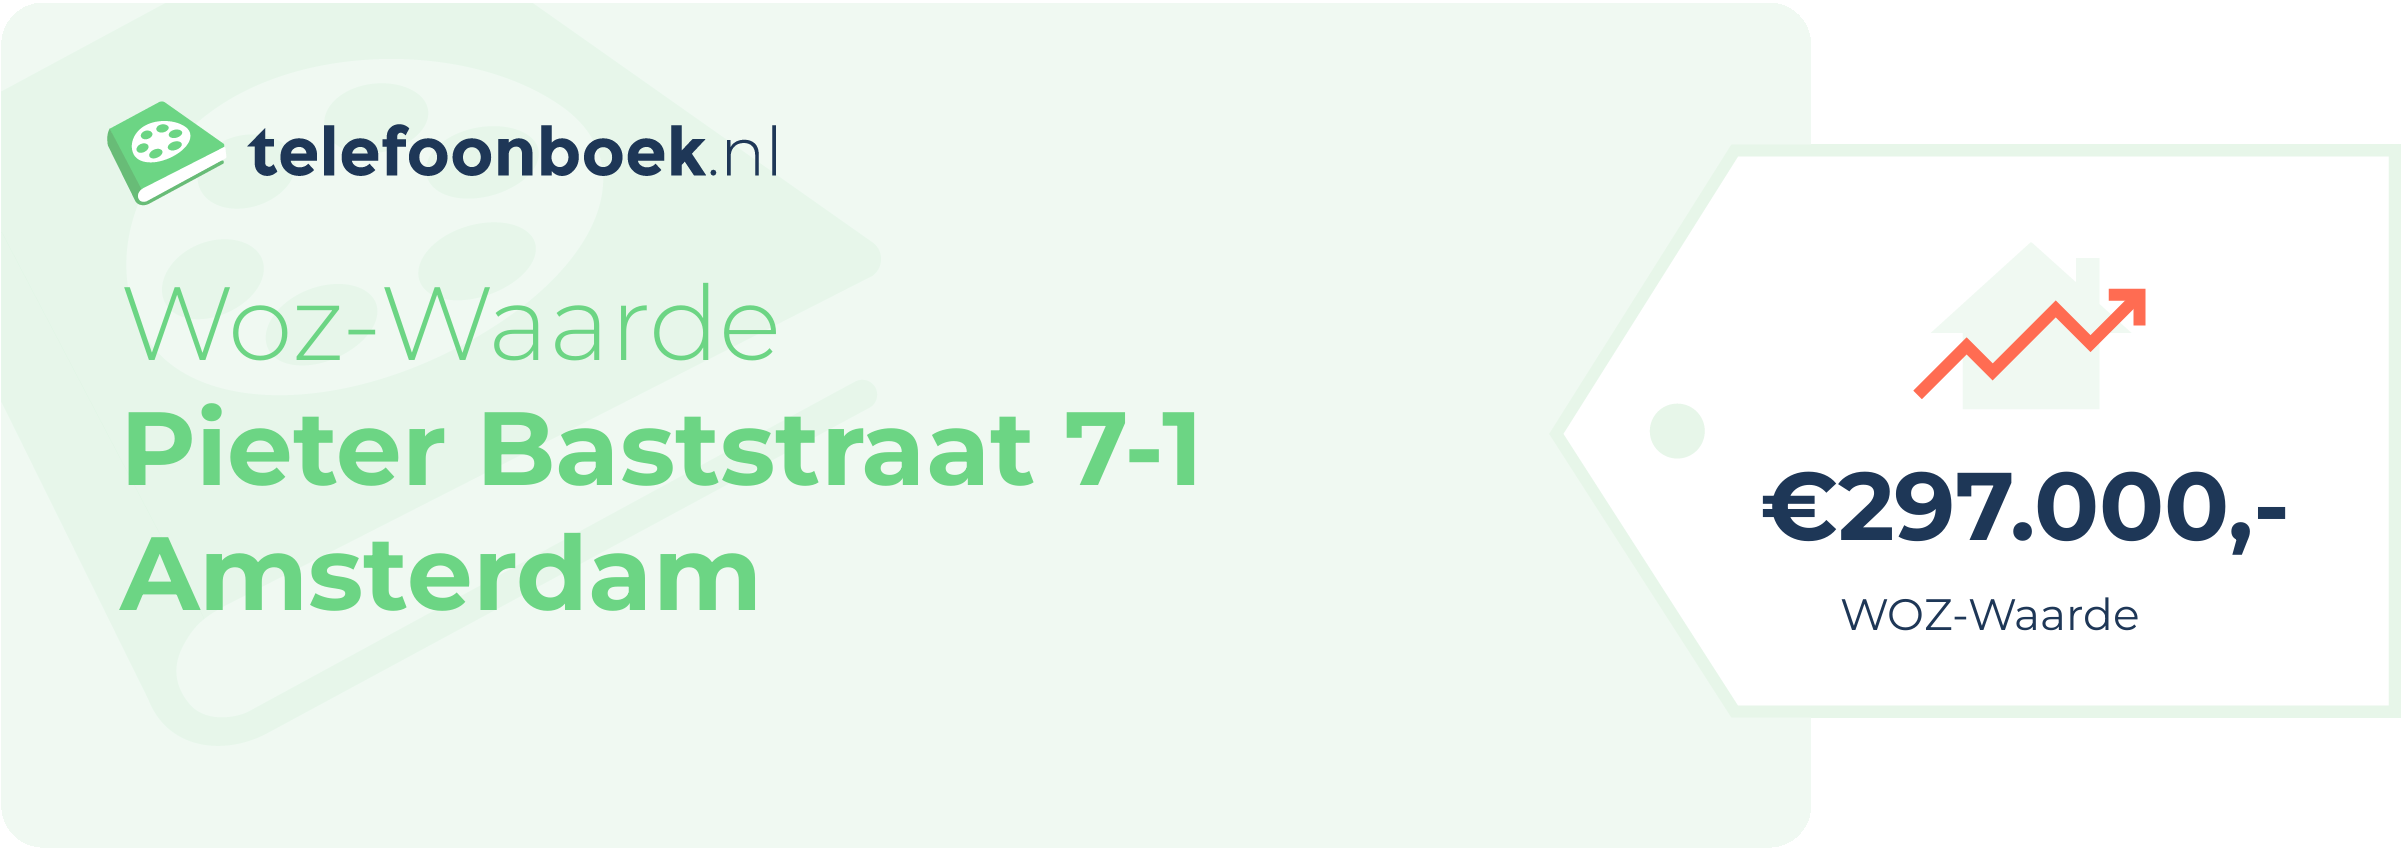 WOZ-waarde Pieter Baststraat 7-1 Amsterdam